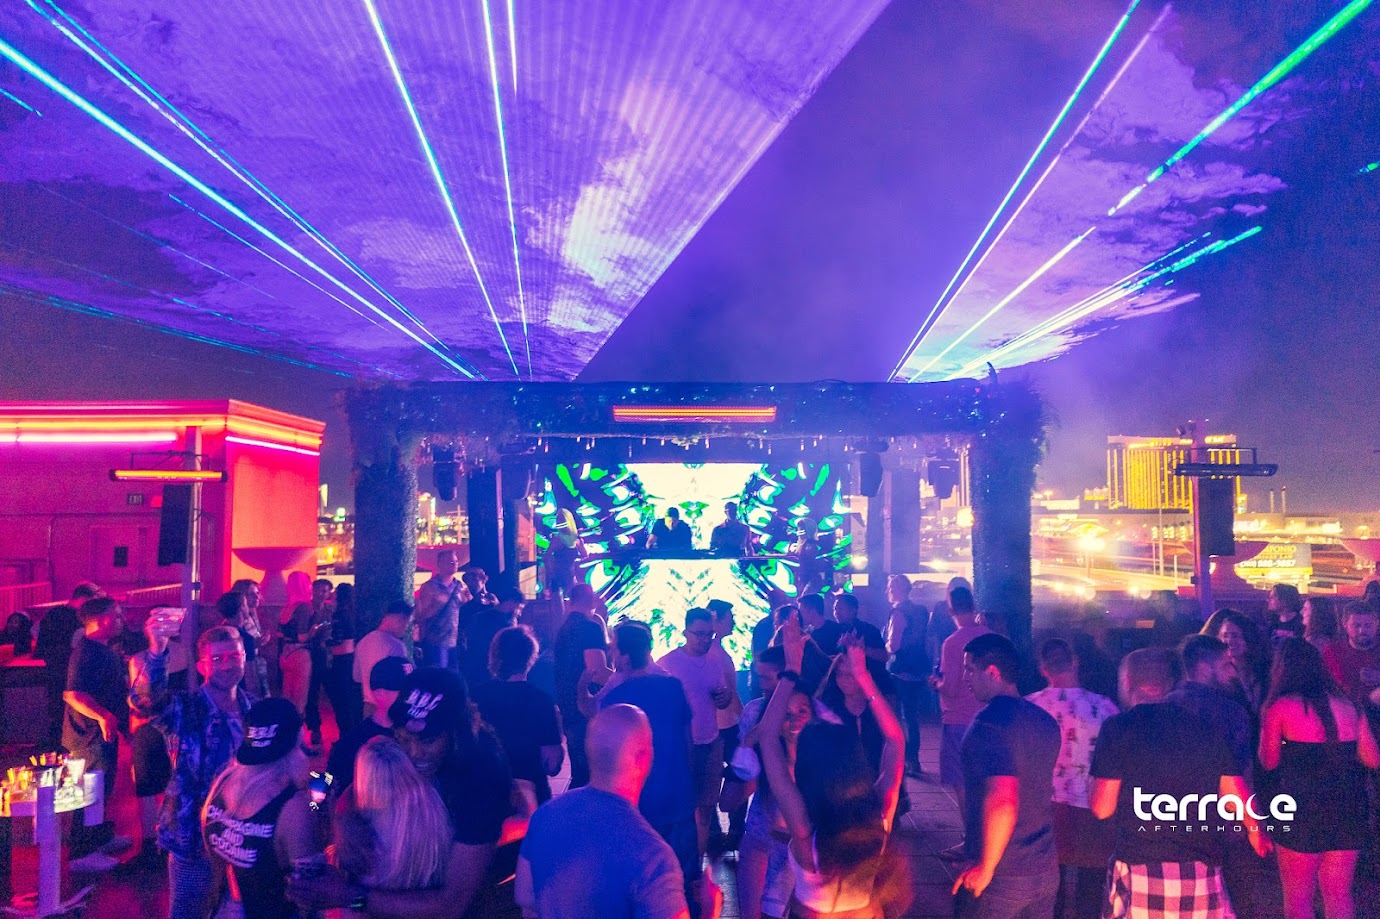 Terrace Afterhours Nightclub | Las Vegas Ultimate Rooftop Experience